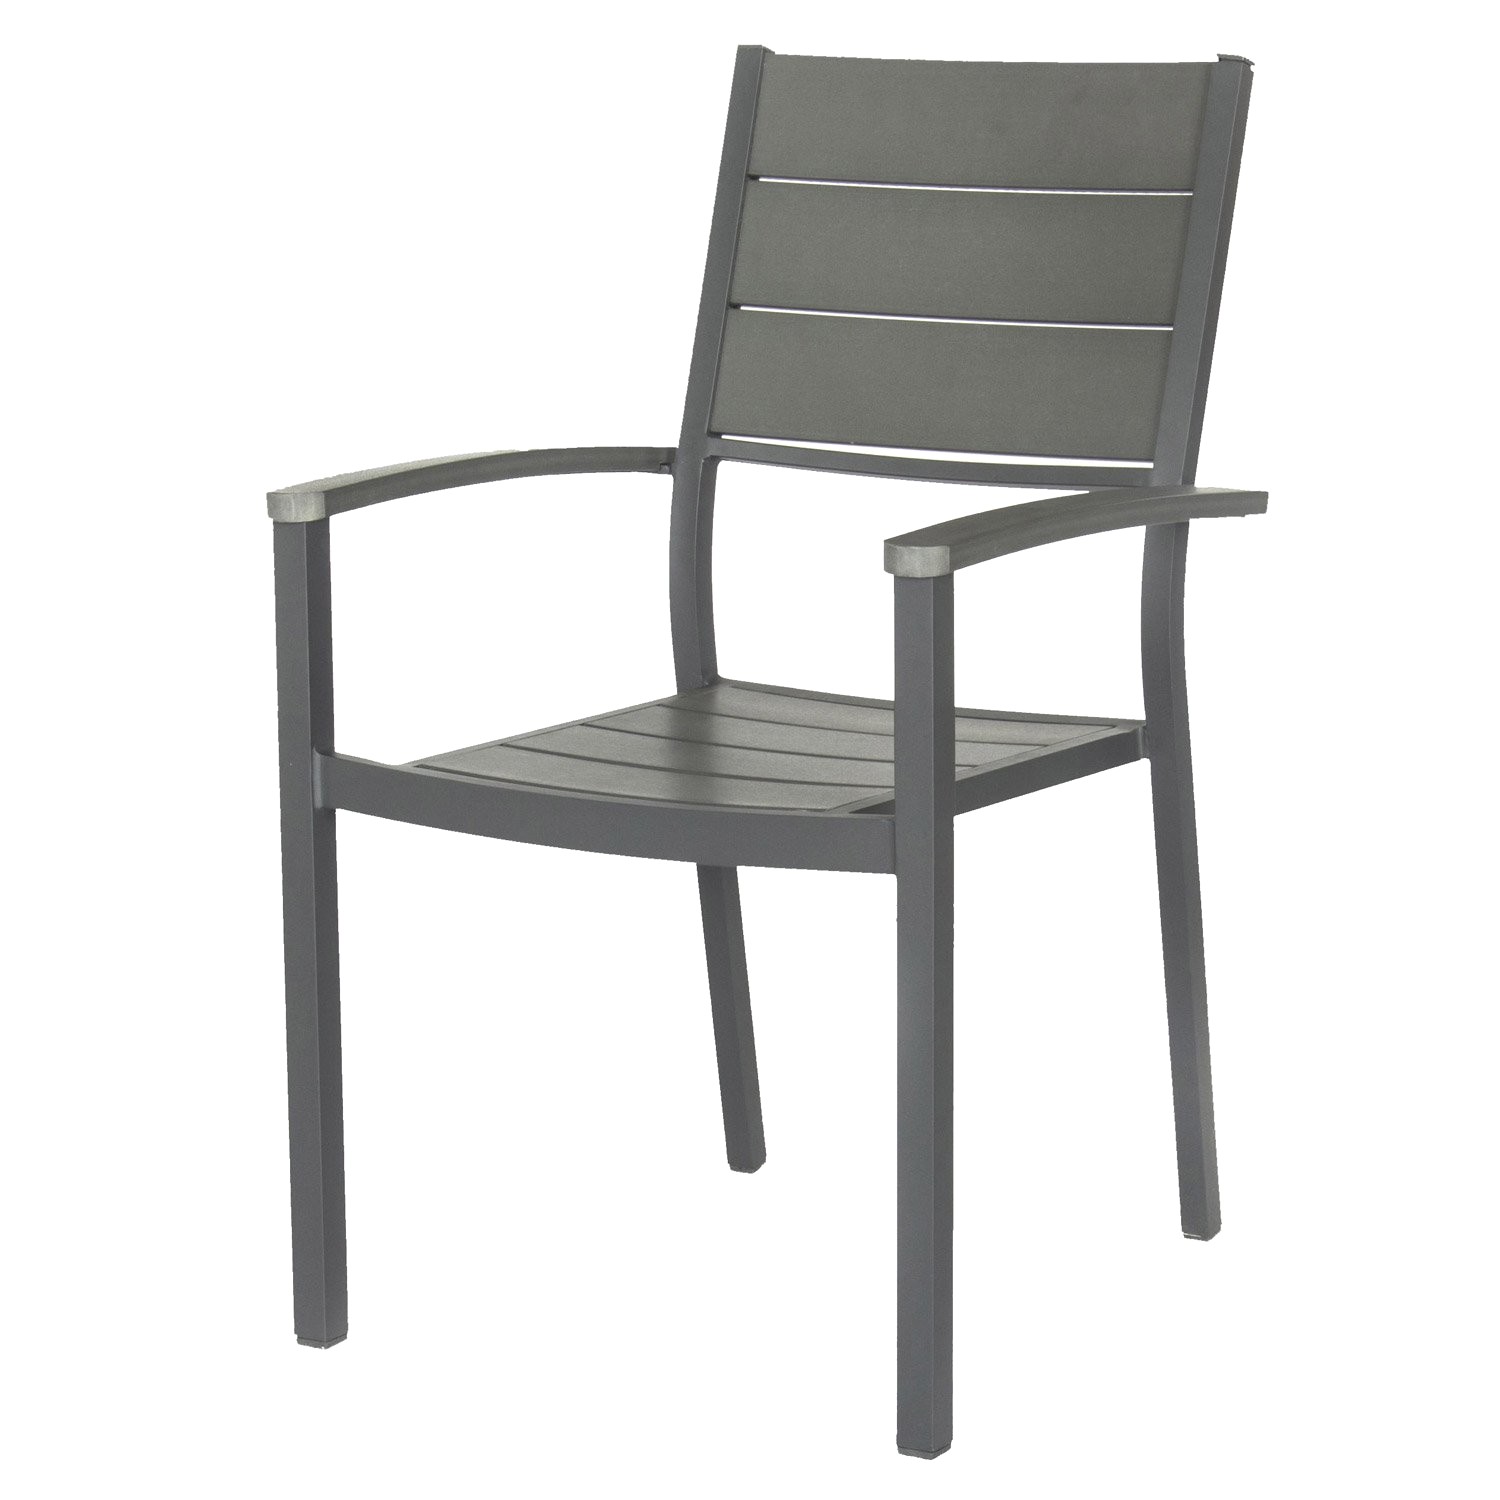 chaise de jardin gris lot chaise de jardin design achatdesign chaise box gris 2 chaise de jardin gris 5 lot chaise de jardin design gris fonc ice